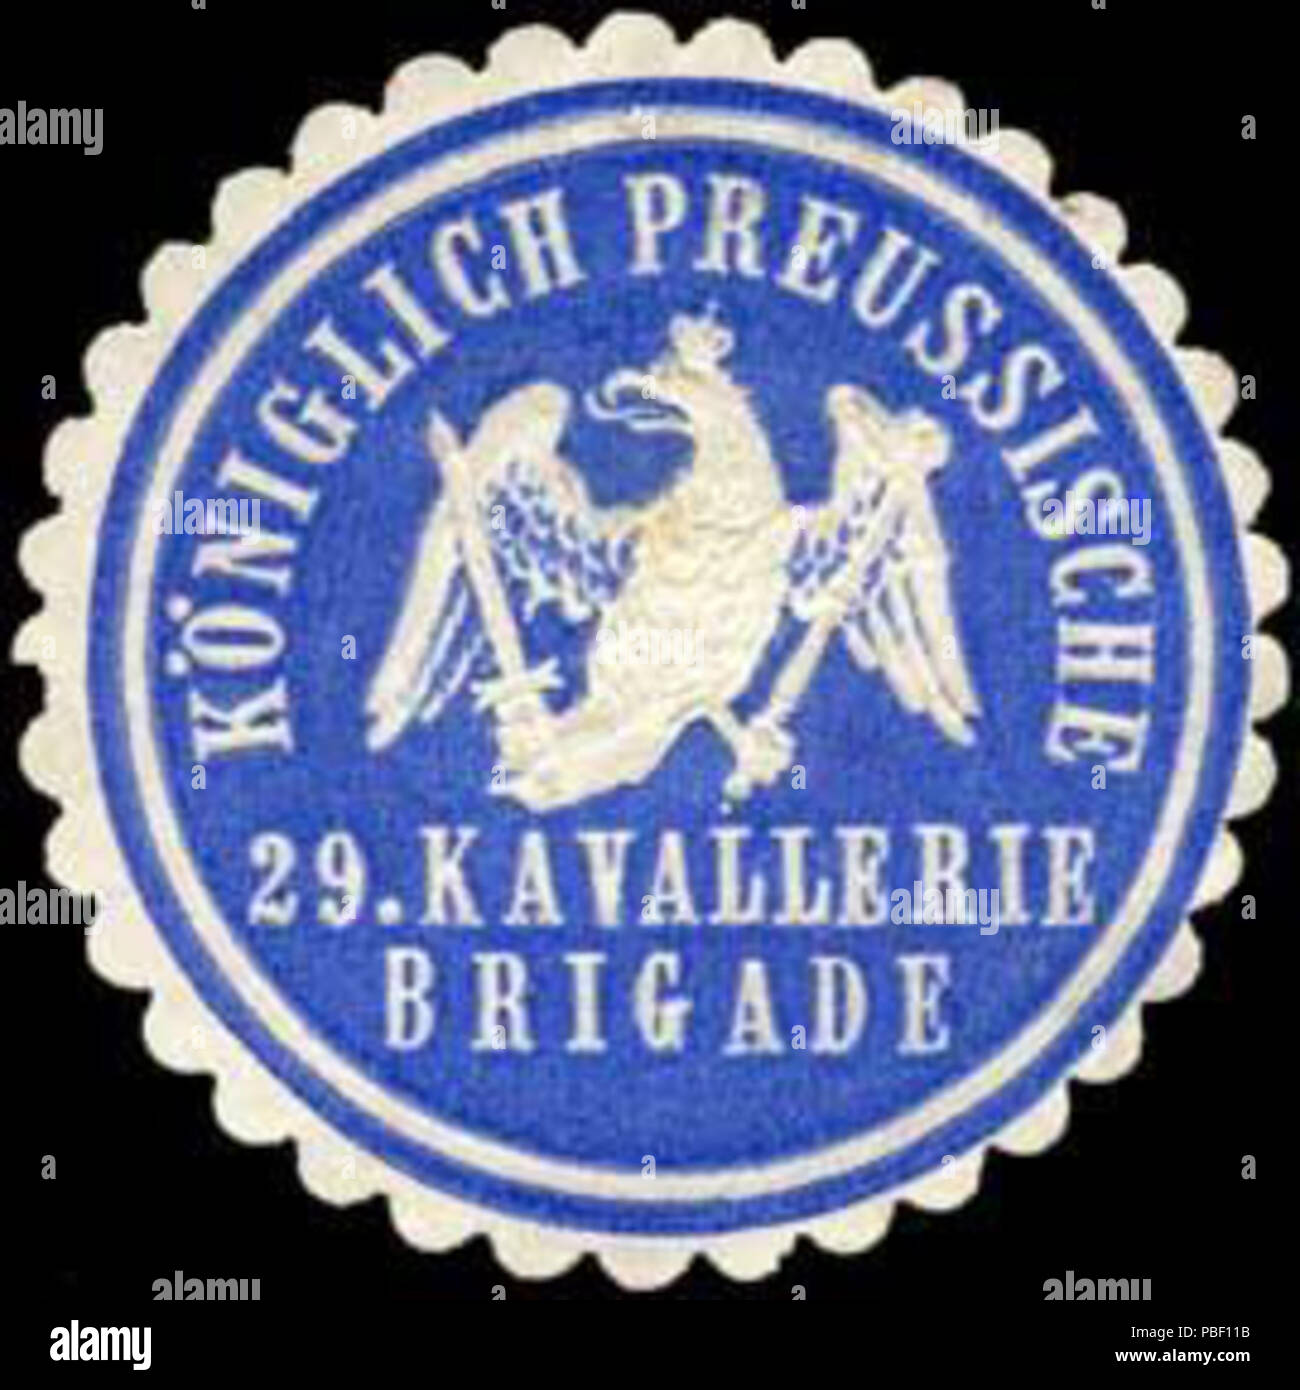 Alte Briefverschlussmarke aus Papier, welche seit ca. 1850 von Behoerden, Anwaelten, Notaren und Firmen zum verschliessen der Post verwendet wurde. 1450 Siegelmarke Königlich Preussische 29. Kavallerie Brigade W0238074 Stock Photo